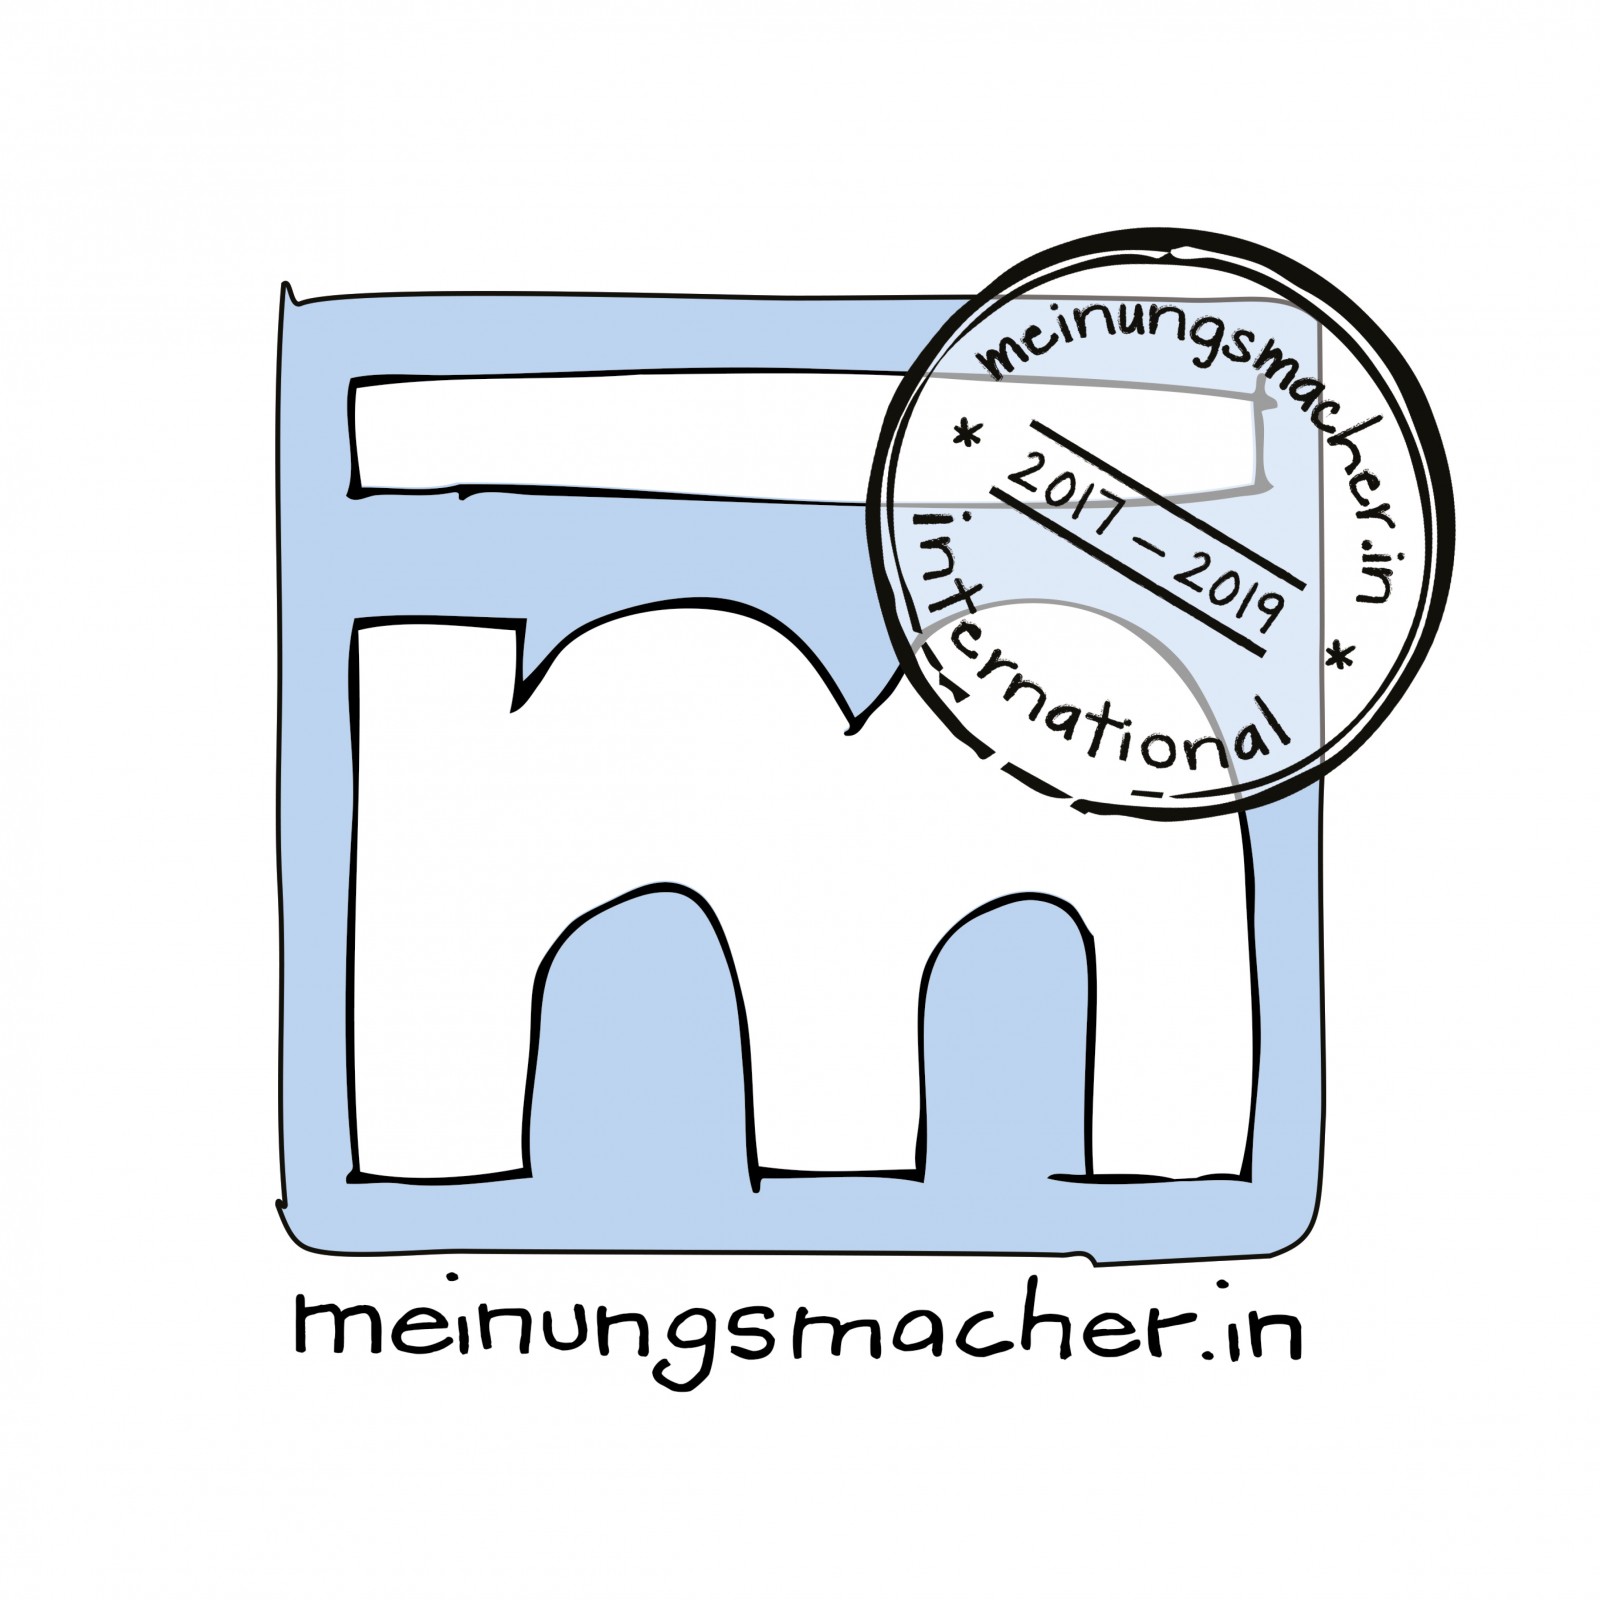 Logo Meinungsmacherin